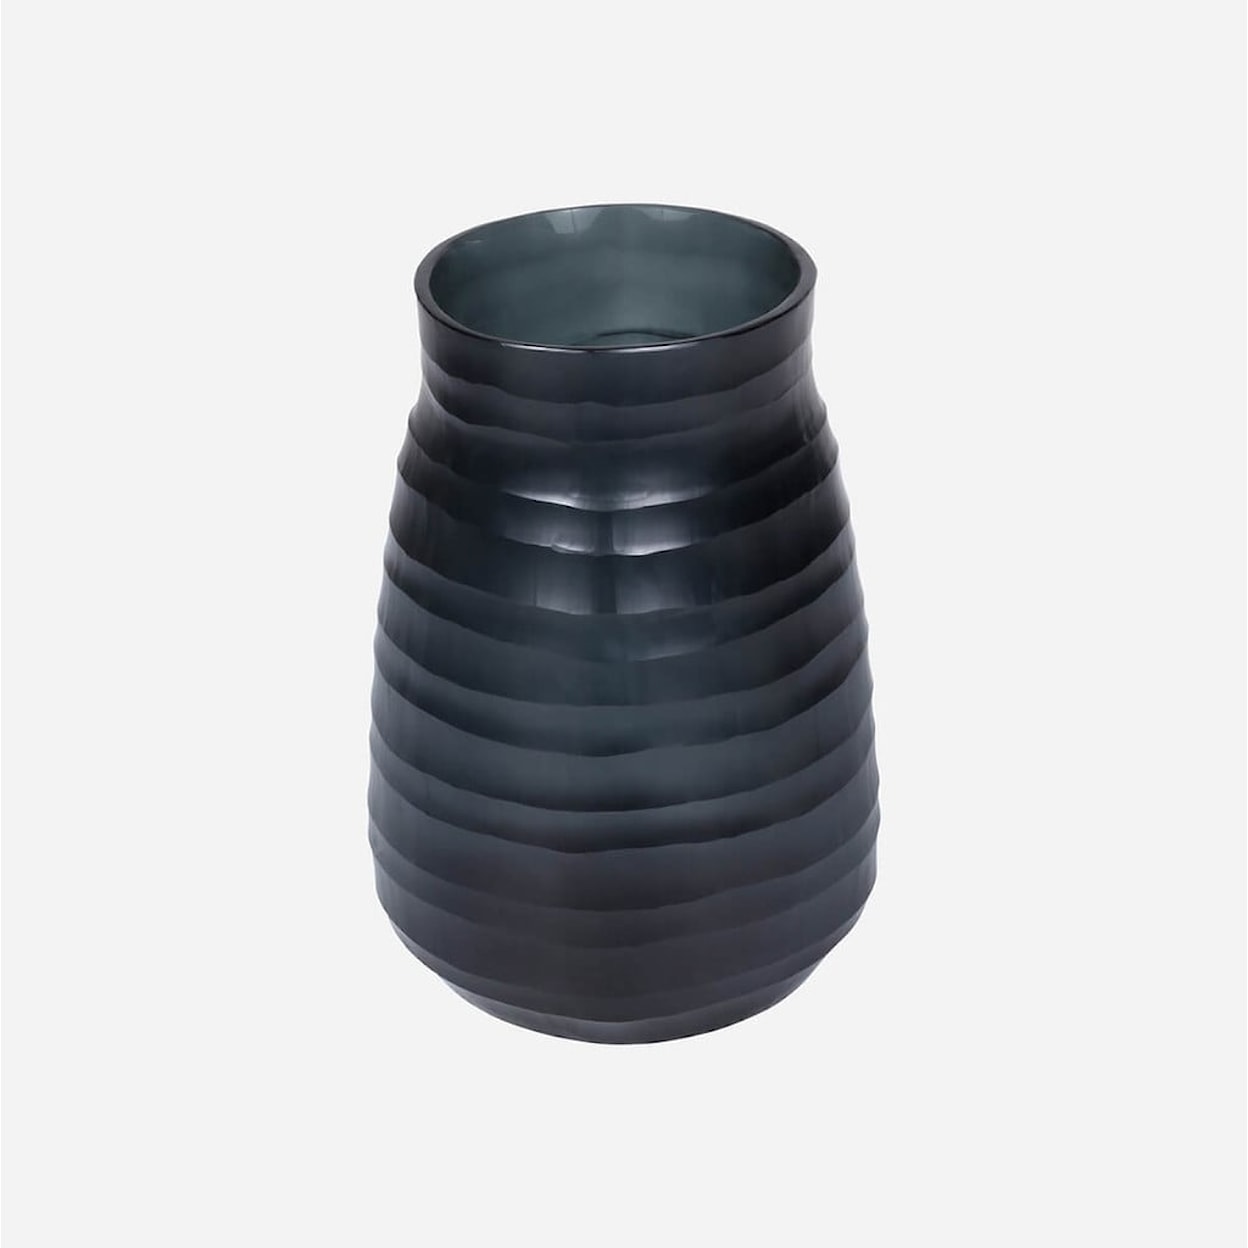 BOBO Intriguing Objects BOBO Intriguing Objects Escaut Dark Indigo Glass Vase - Medium